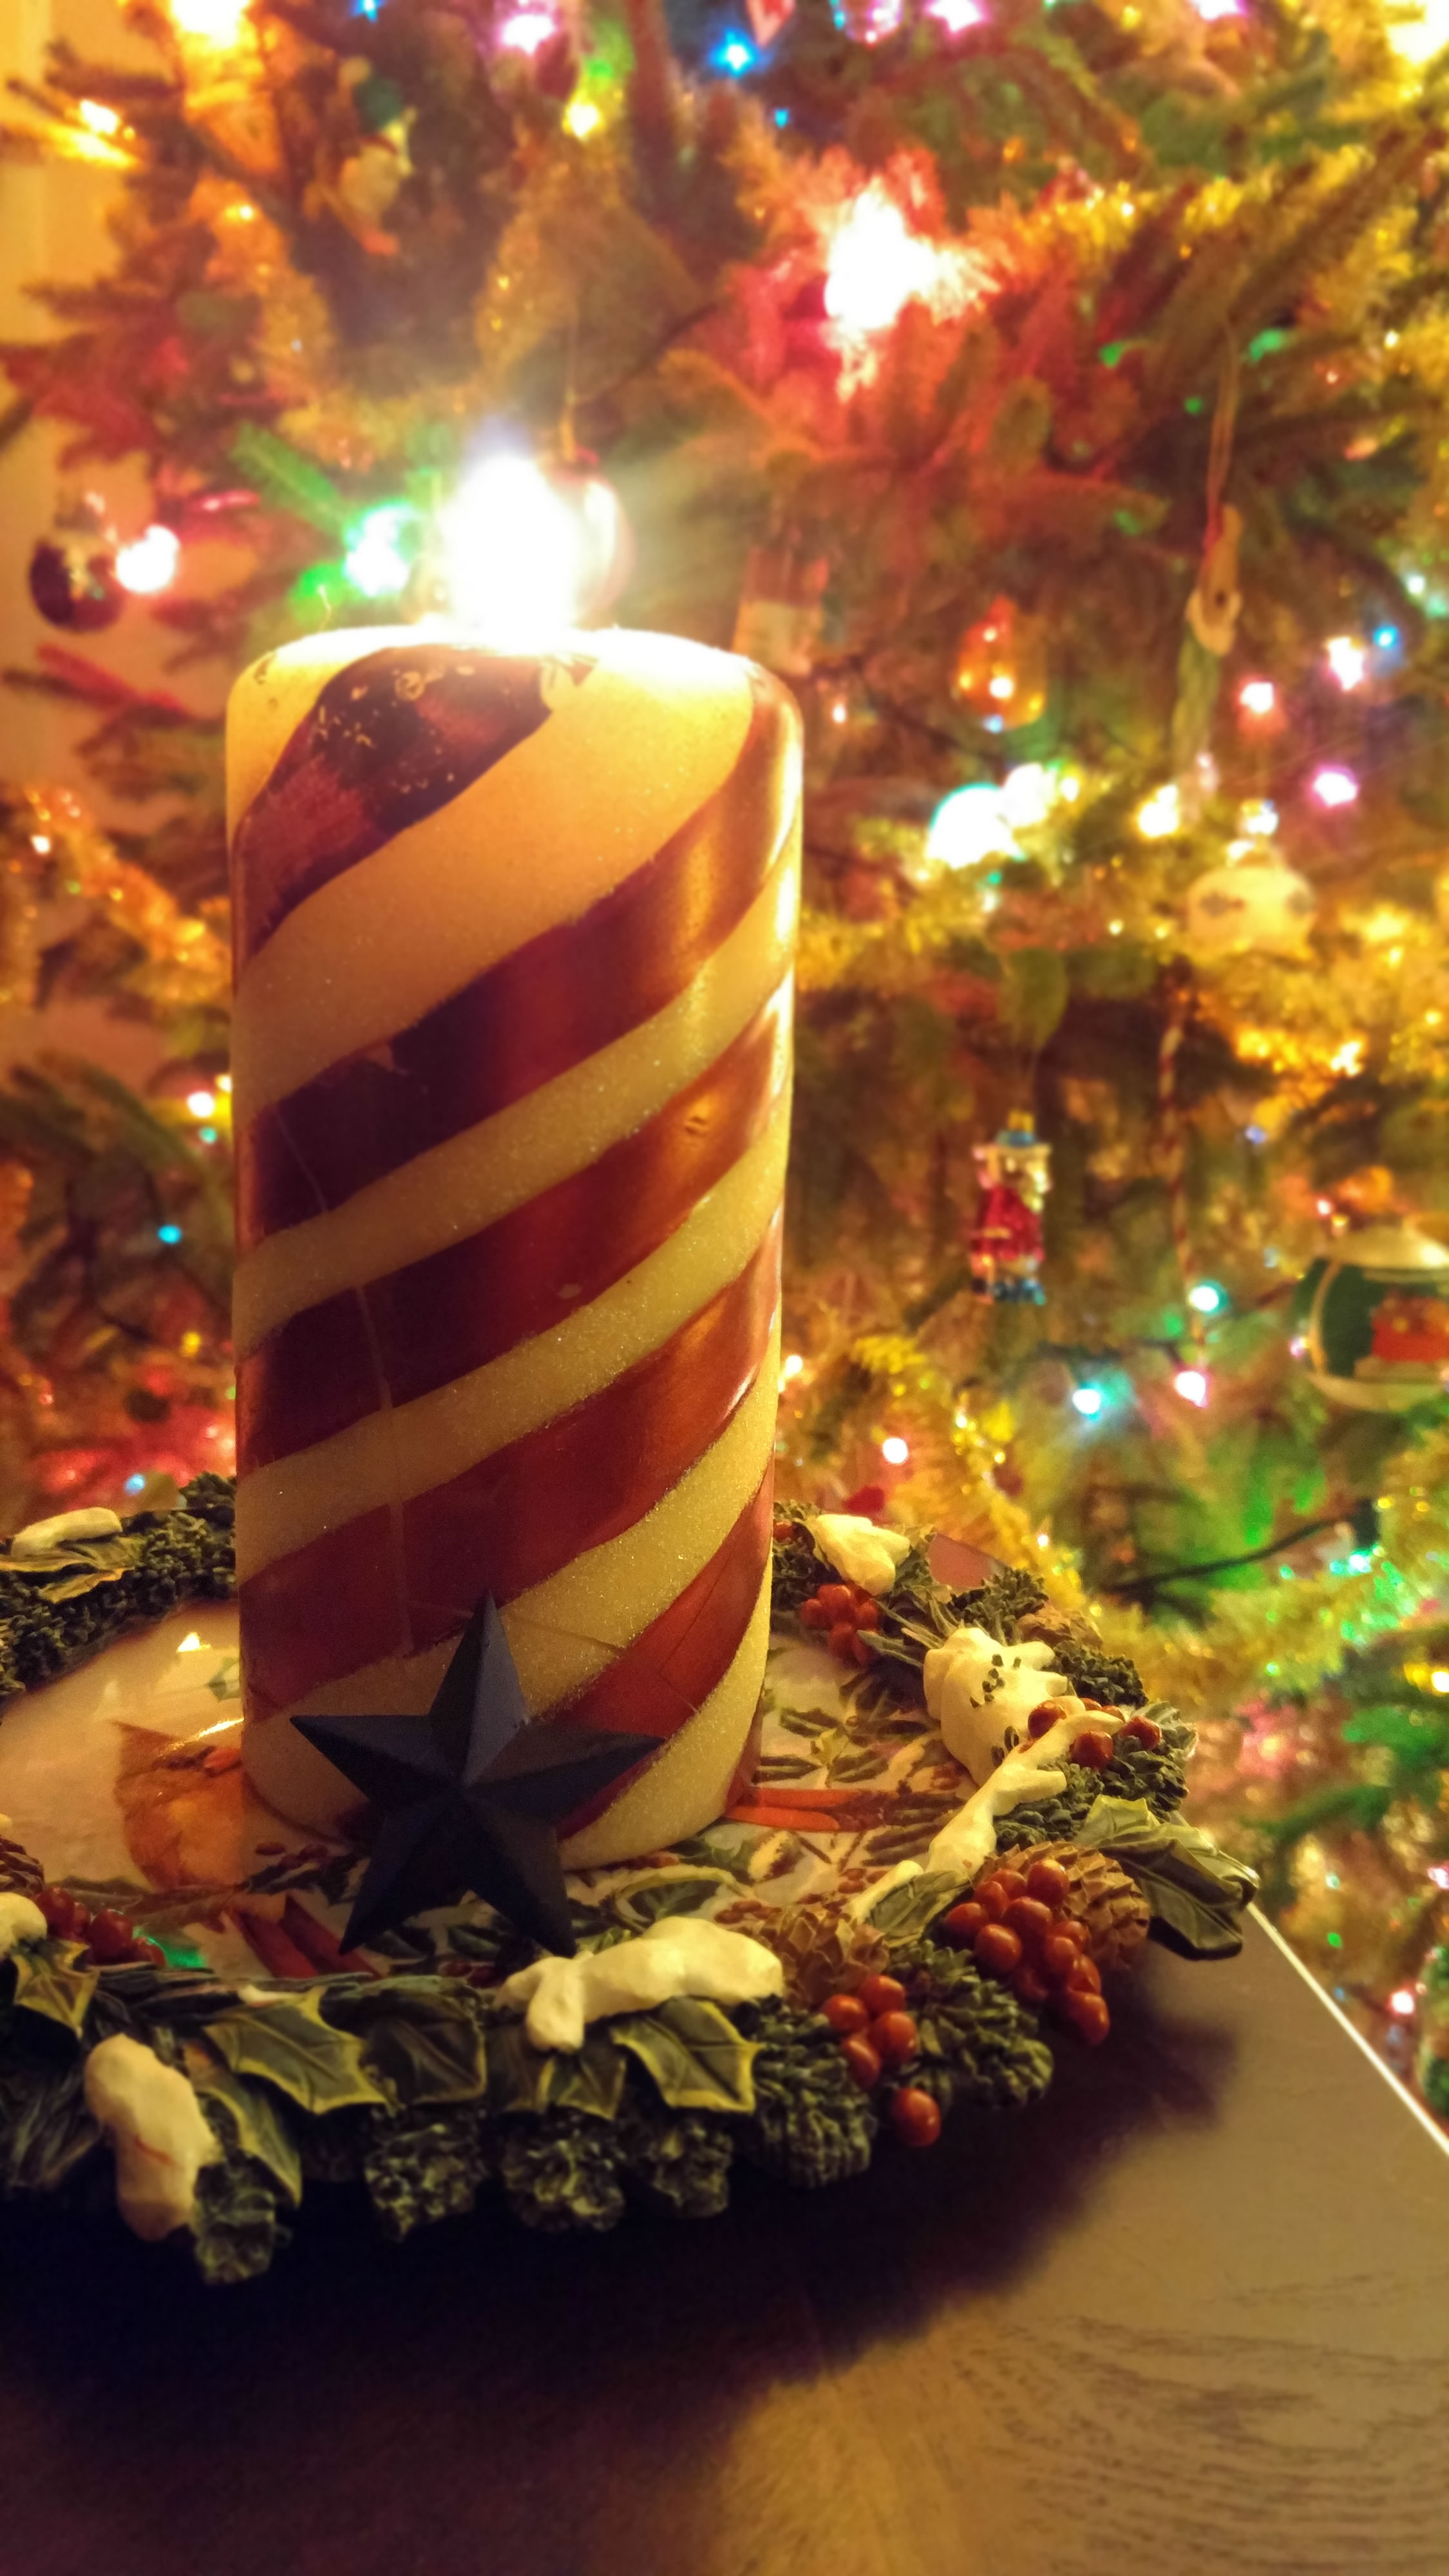 http://widowsvoice.com/wp-content/uploads/2015/11/holiday_spirits1.jpg